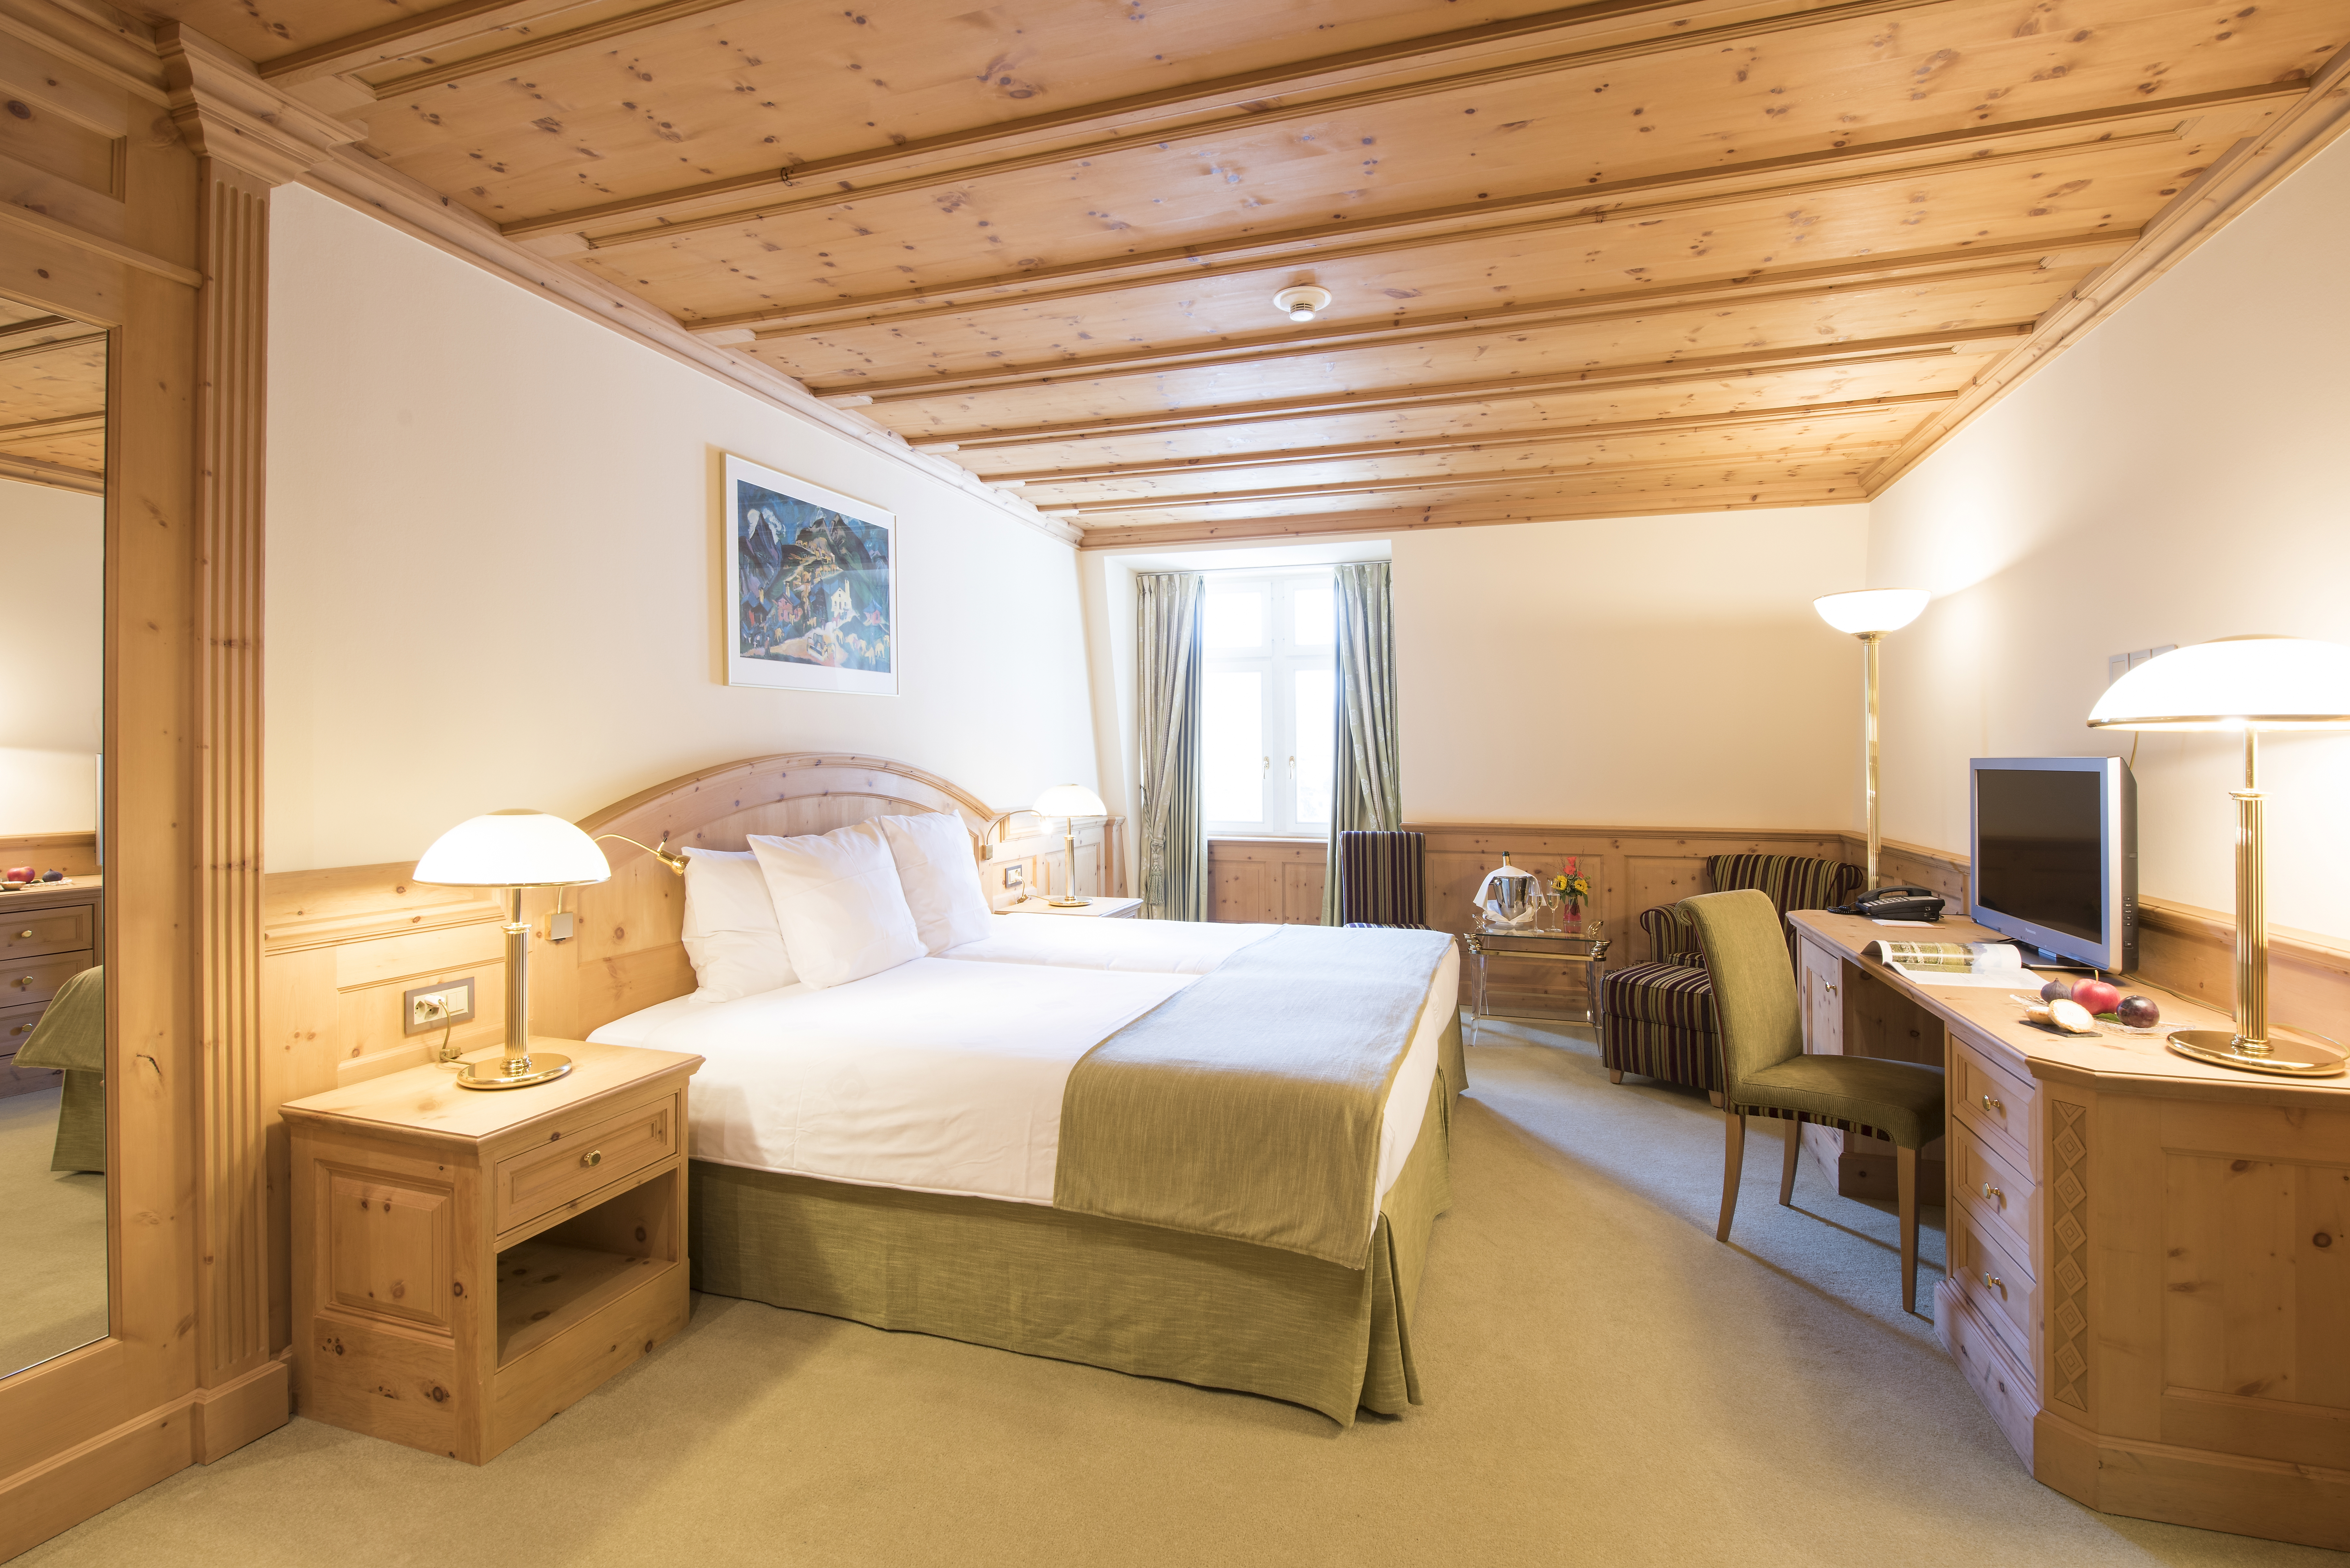 Hotelzimmer mit Doppelbett und schöner Holzdecke